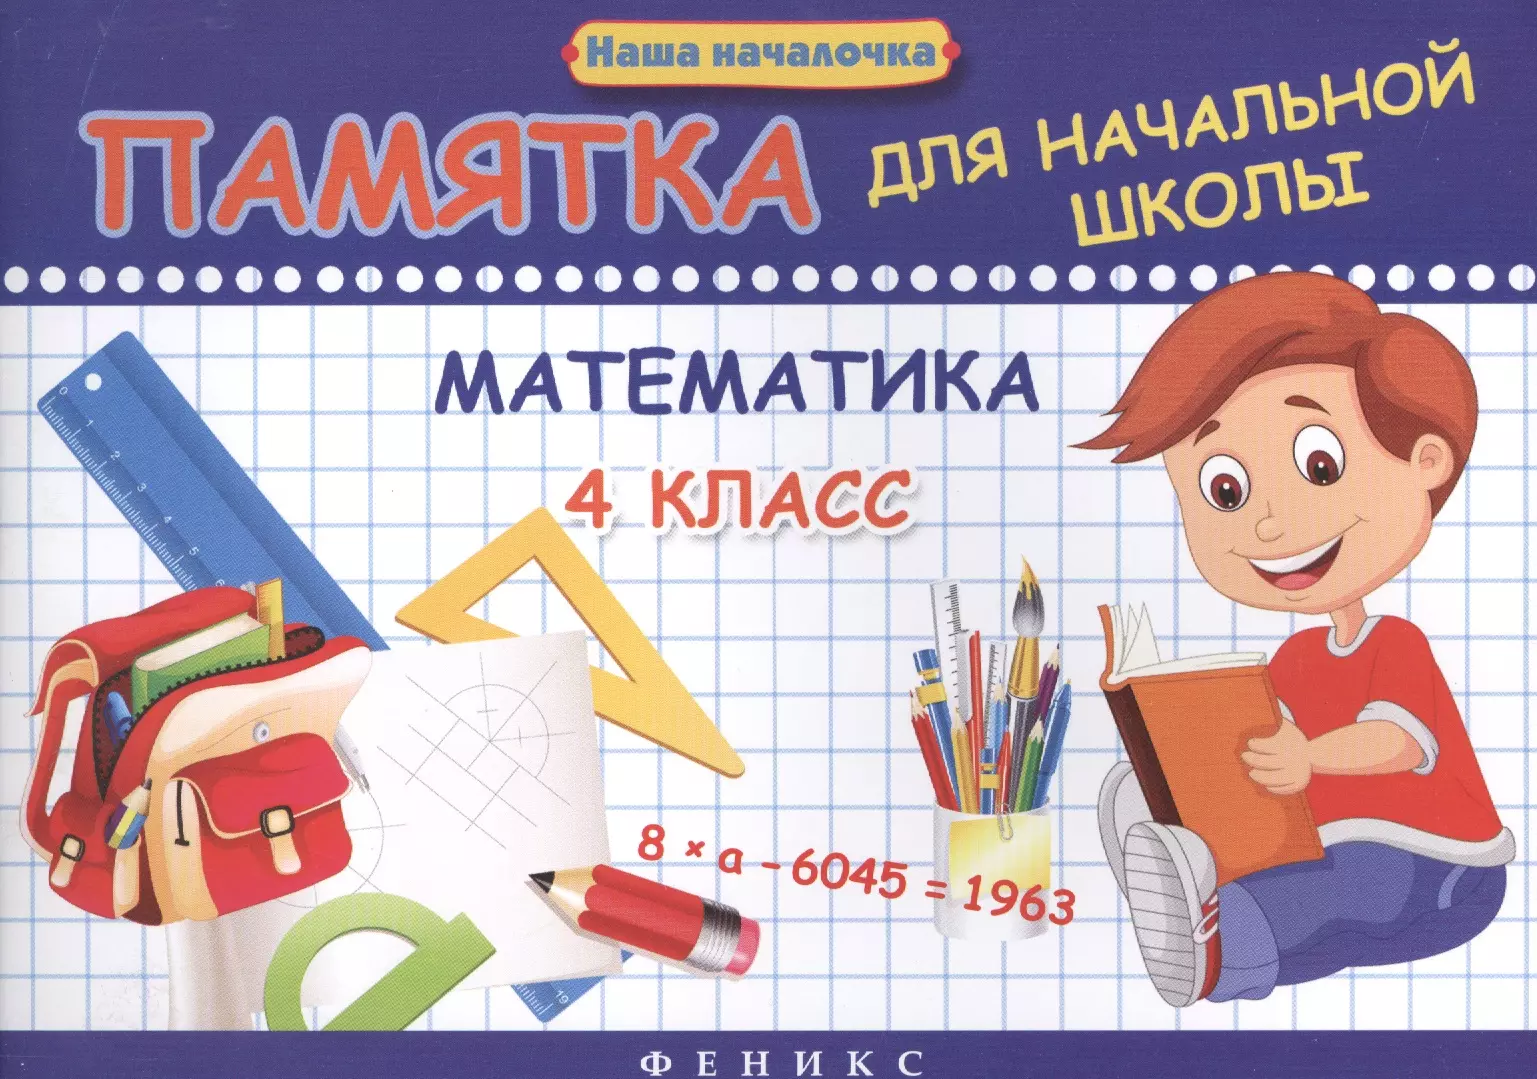 Матекина Эмма Иосифовна - Математика. 4 класс: памятка для начальной школы